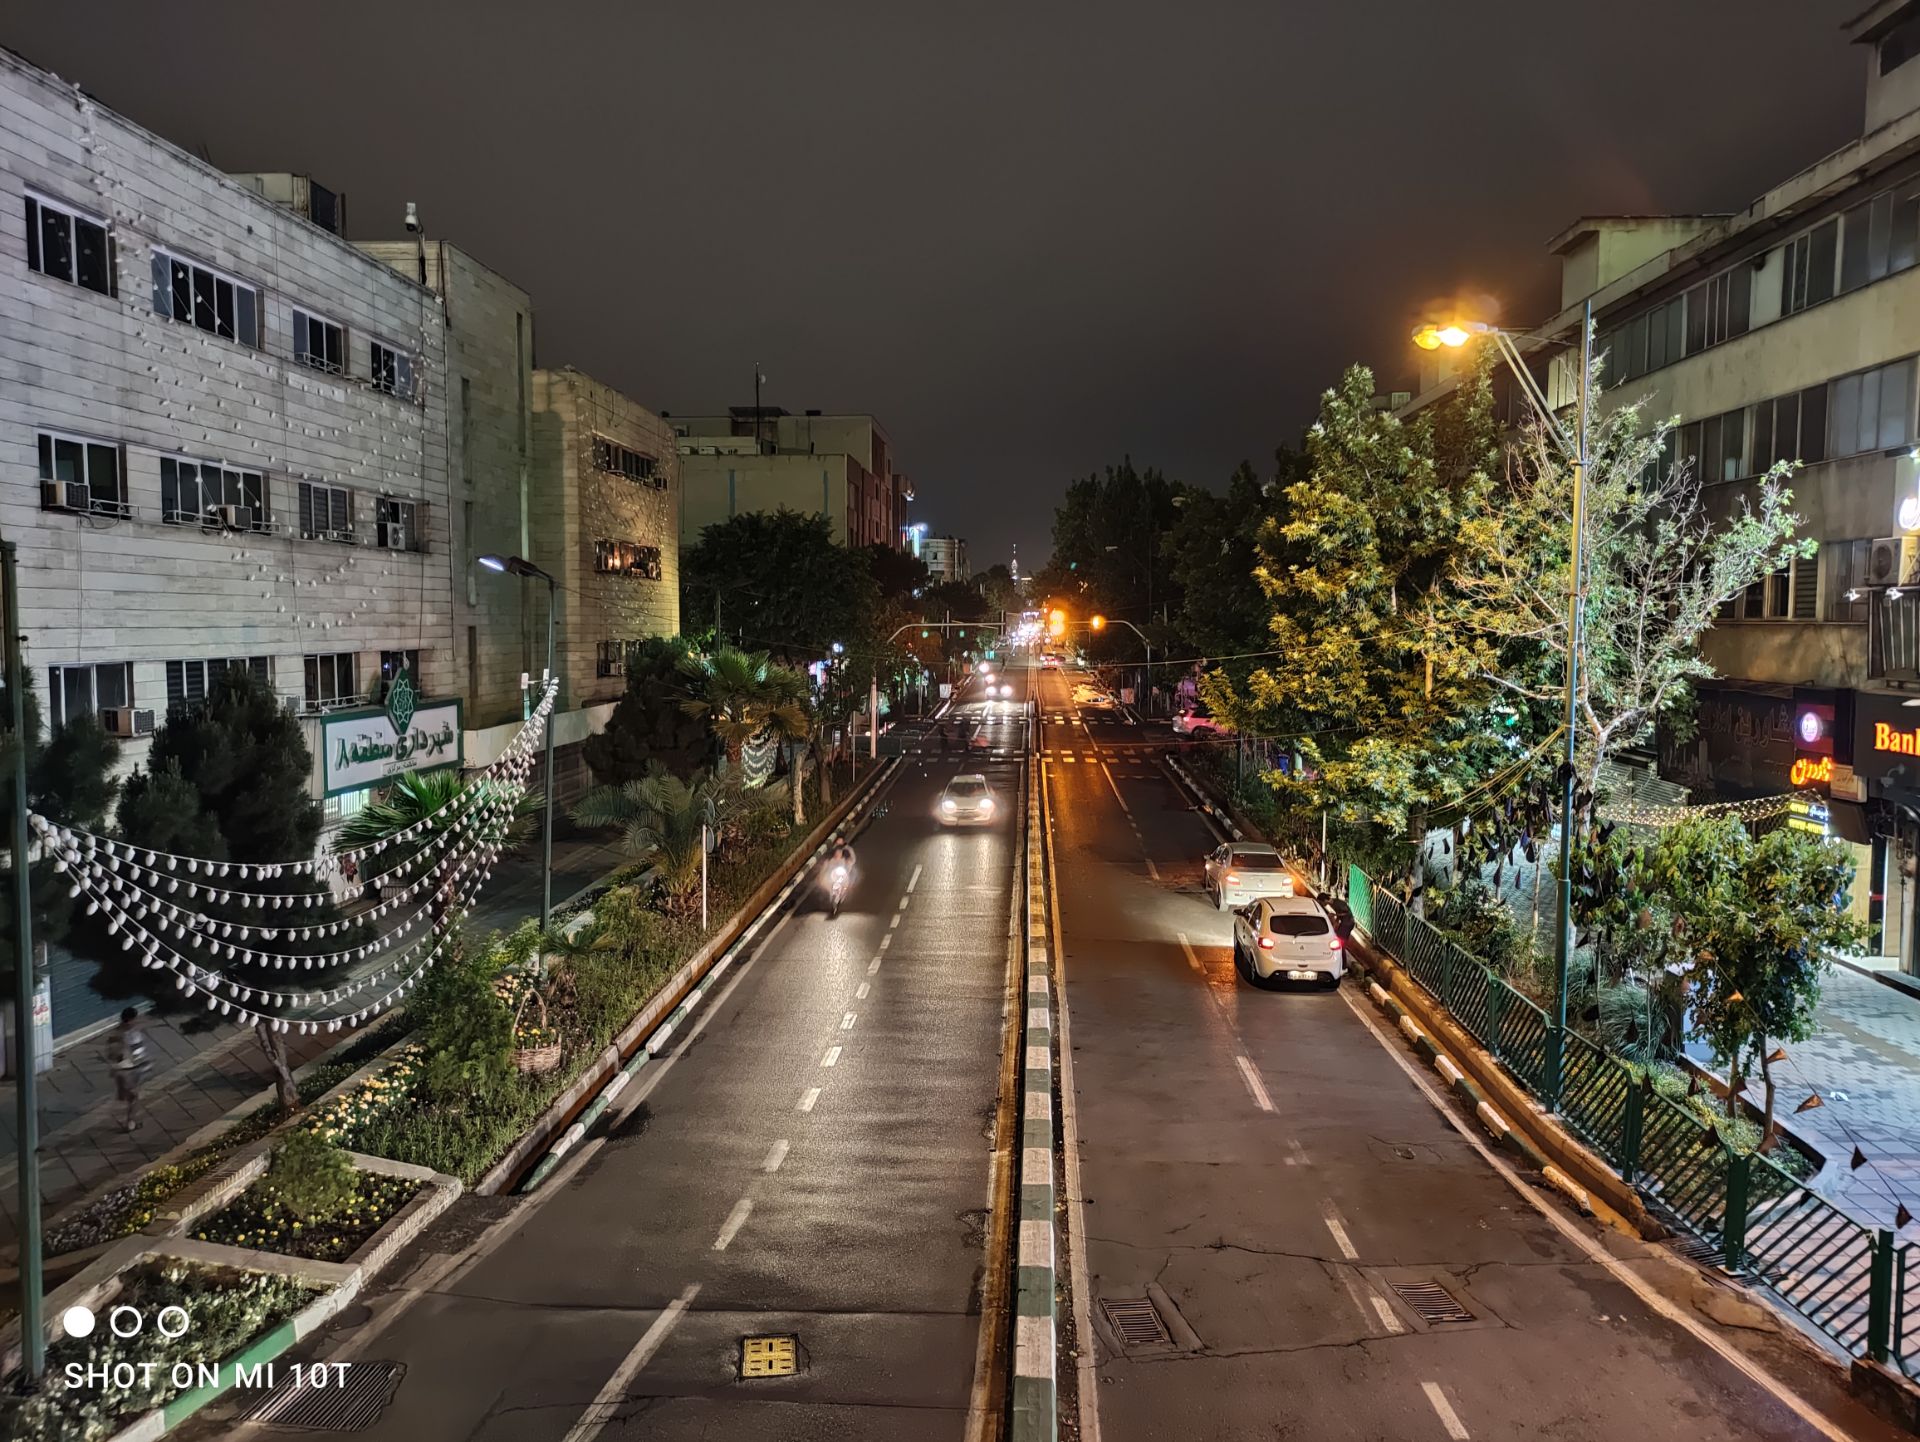 نمونه عکس دوربین اصلی شیائومی می 10 تی - نمای خیابان گلبرگ در شب